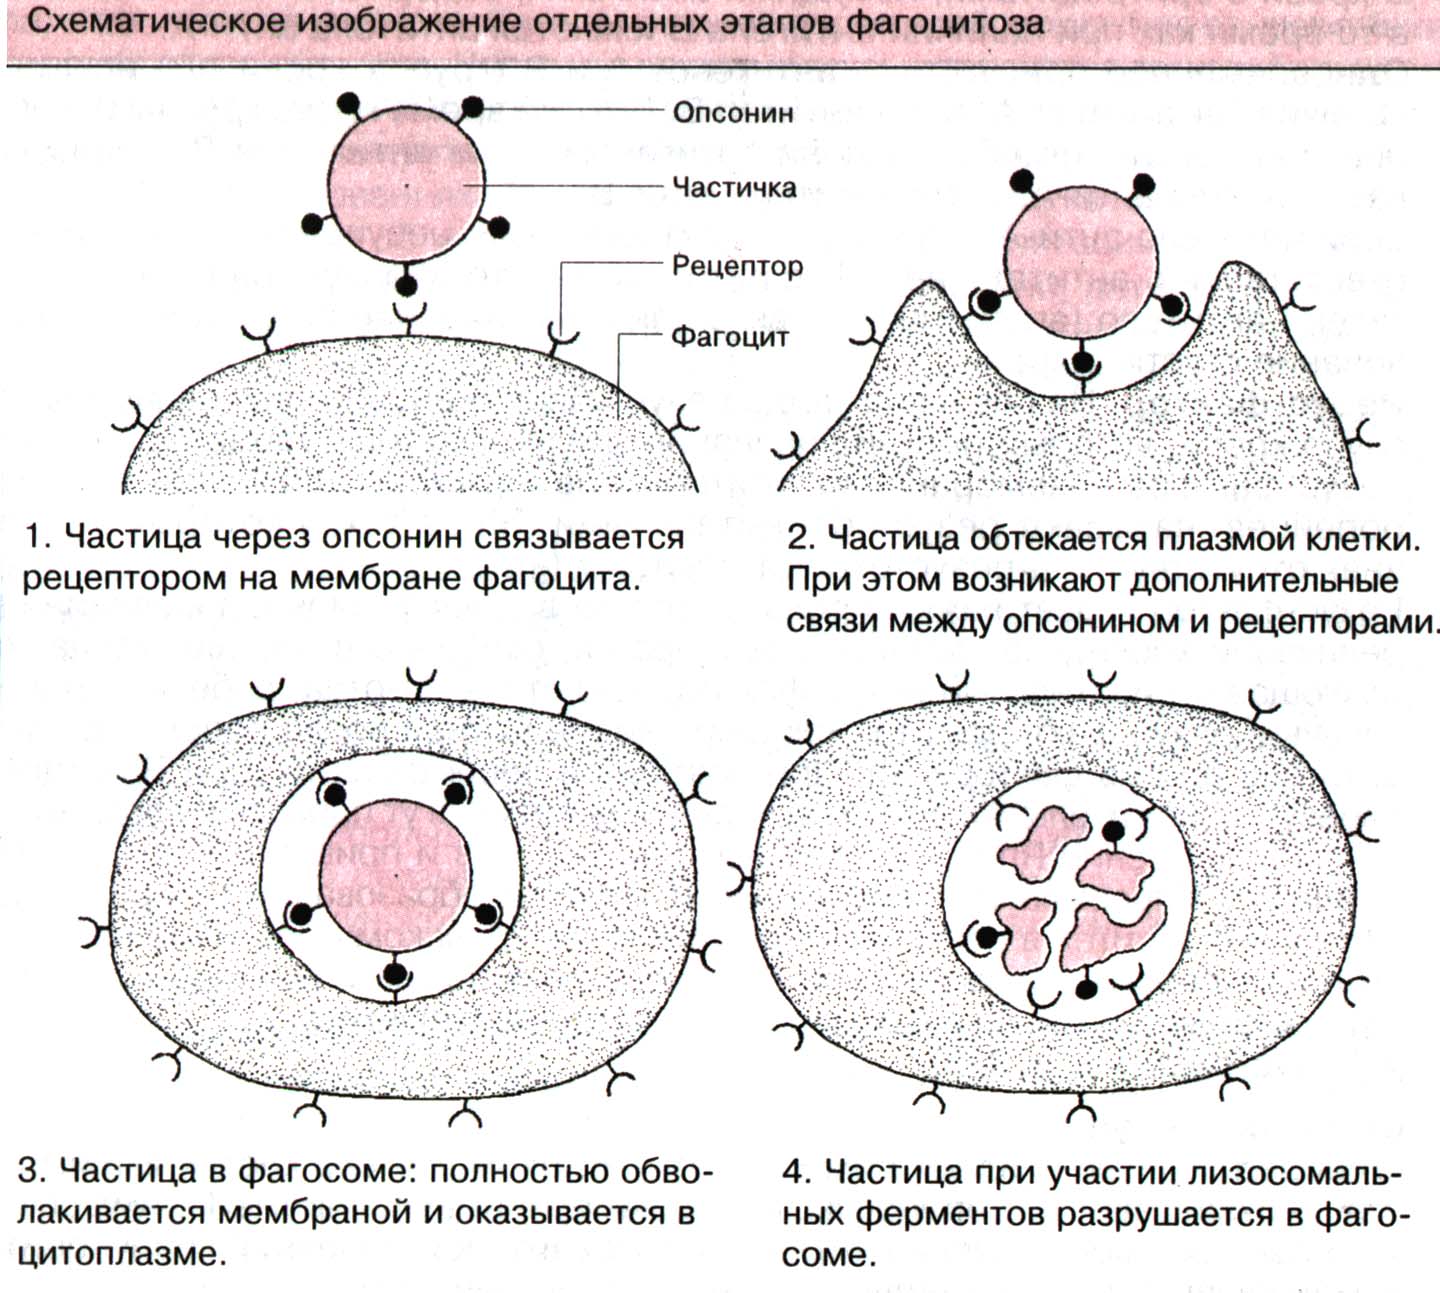 Урок по биологии в 10 классе по теме«Строение плазматической мембраны клетки. Транспорт веществ через мембрану»